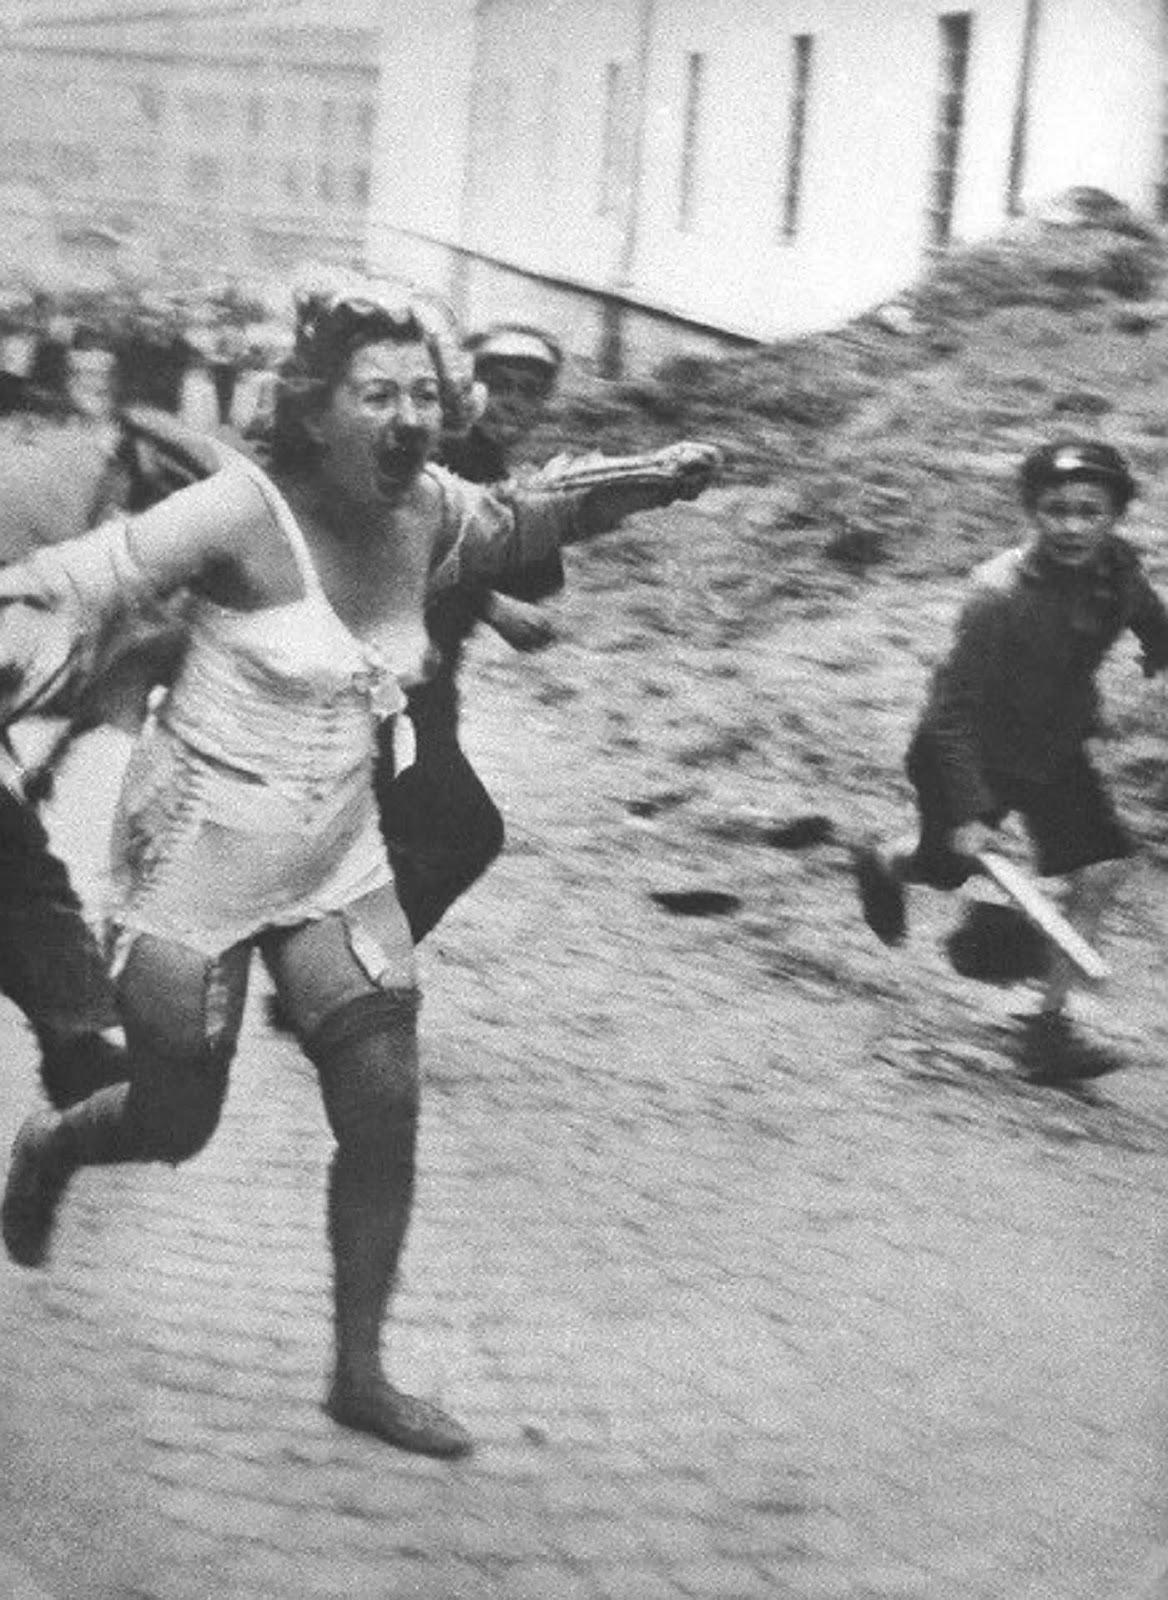 Femme juive poursuivi par des hommes et des jeunes armés de gourdins au cours de l'Lviv pogroms, 1941